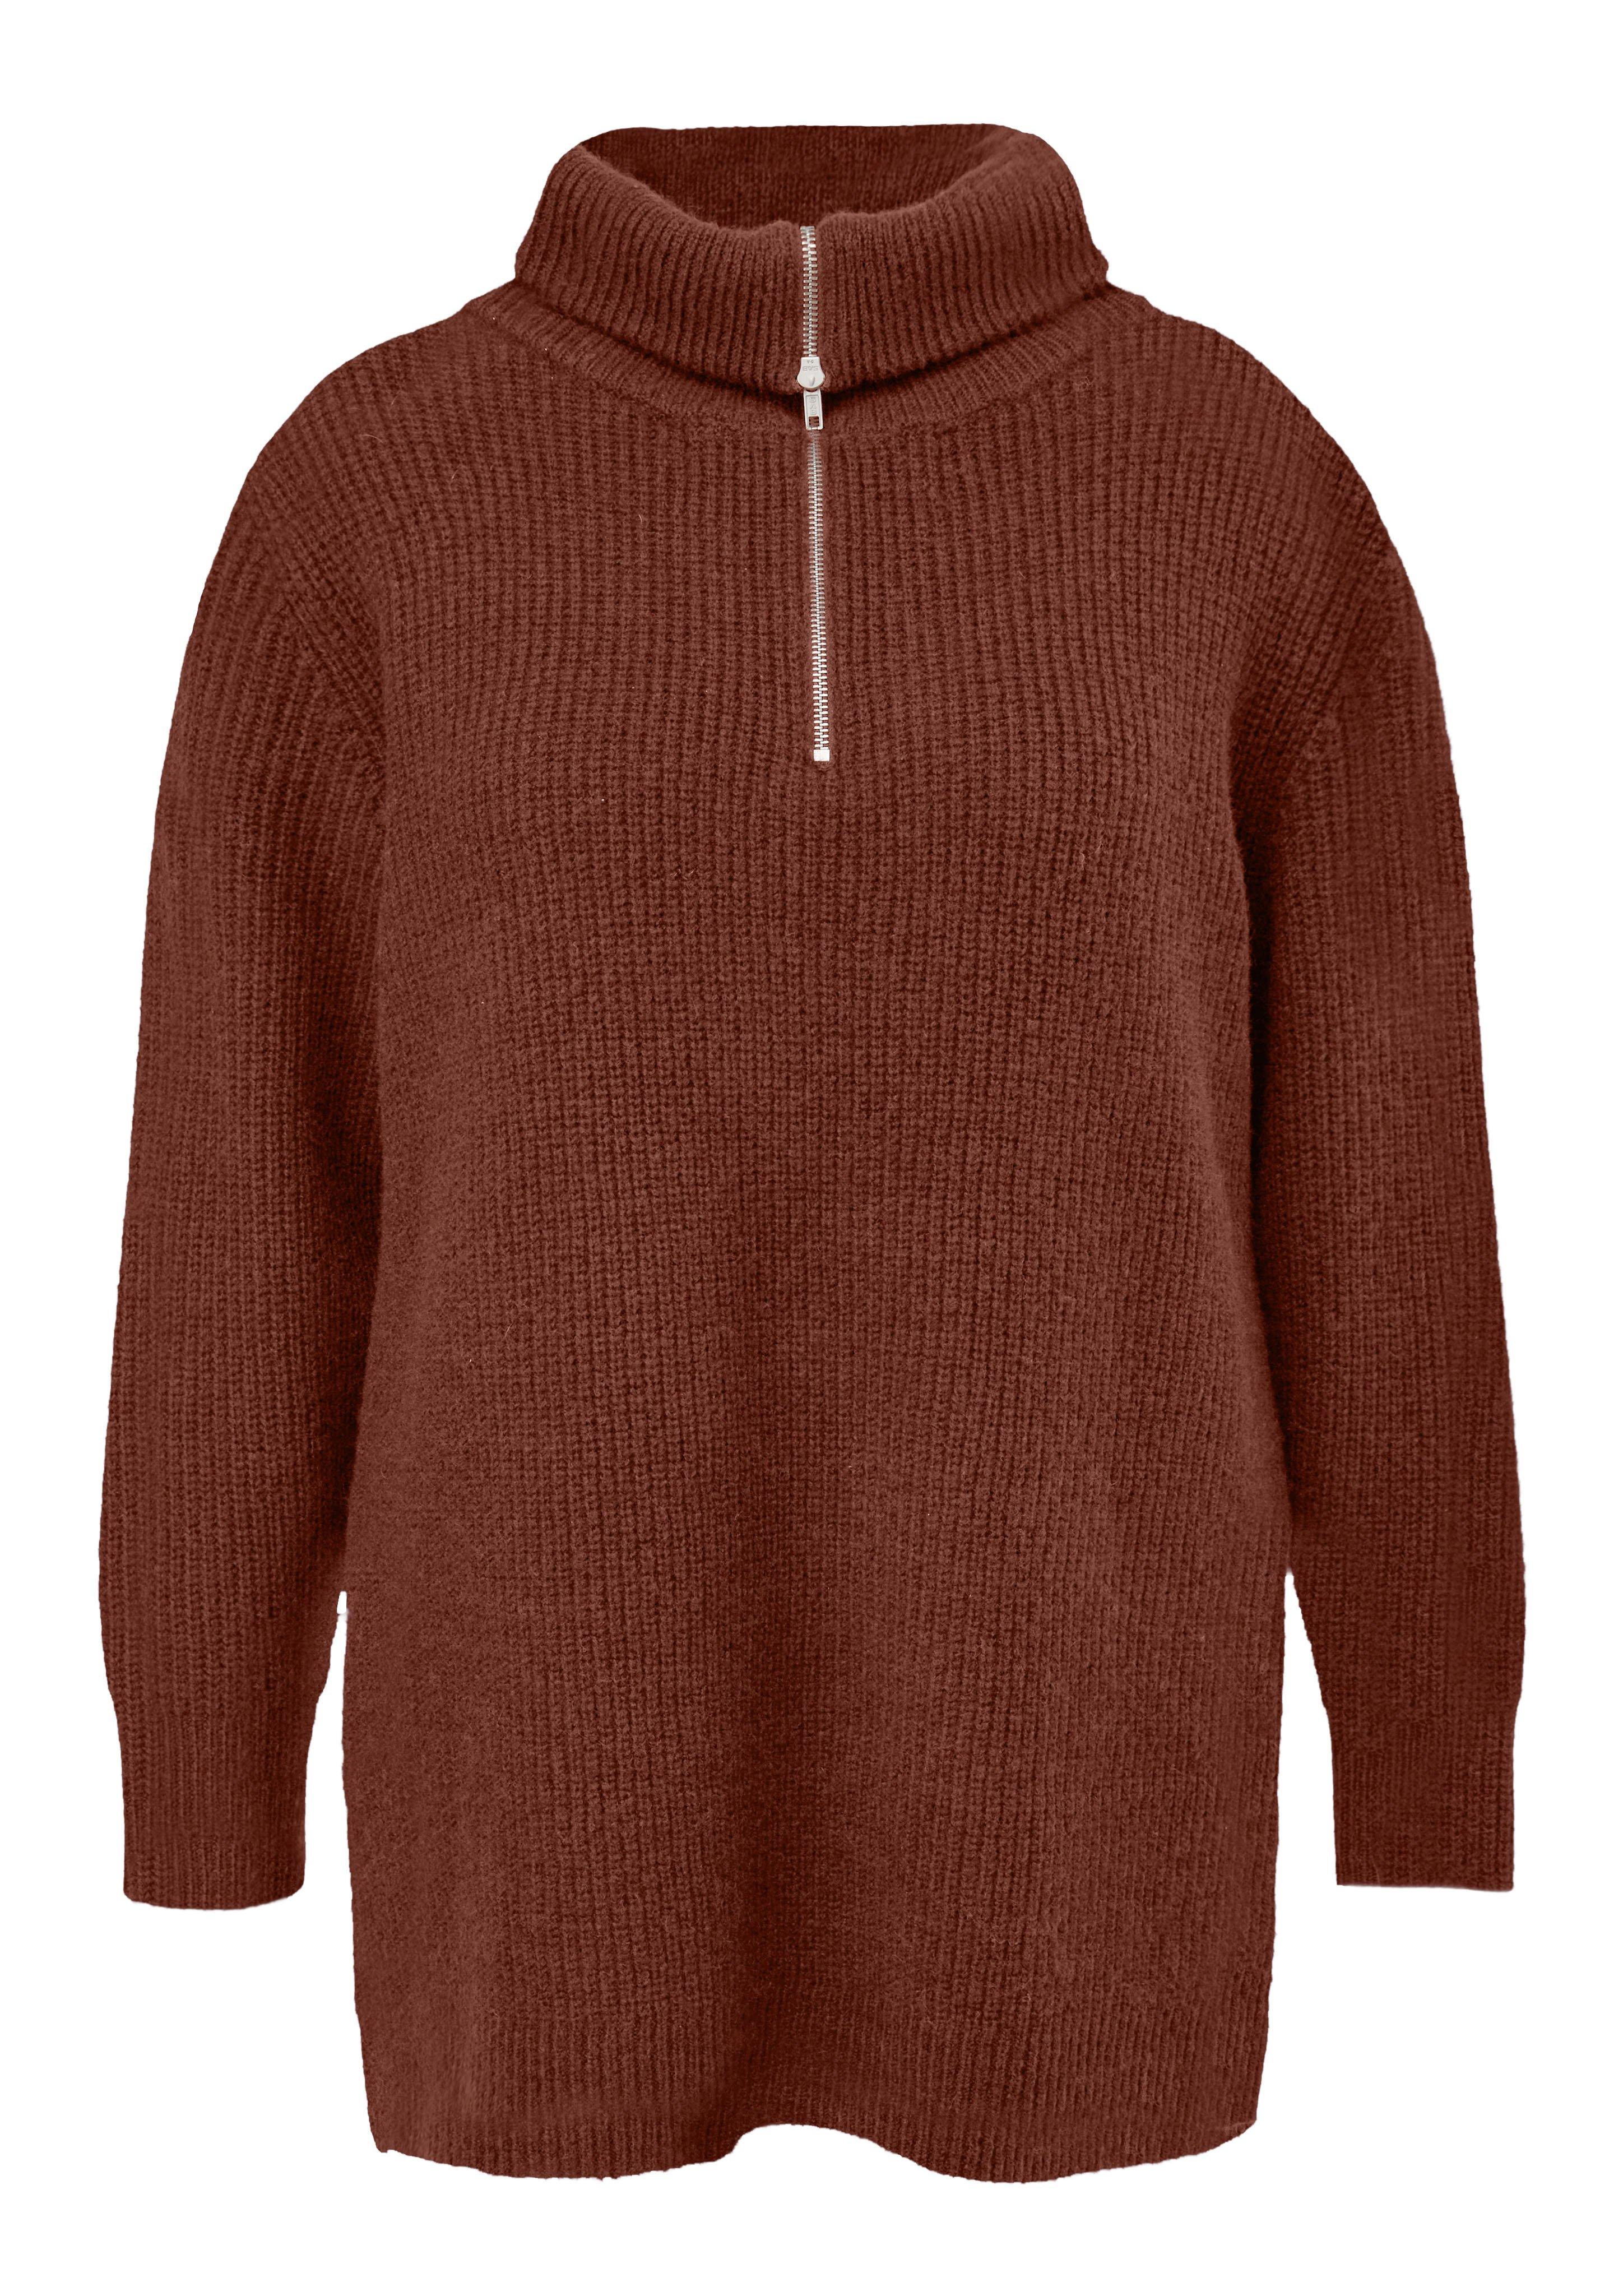 Große Größen: Kuscheliger Pullover mit Troyerkragen, rotbraun, Gr.44-54